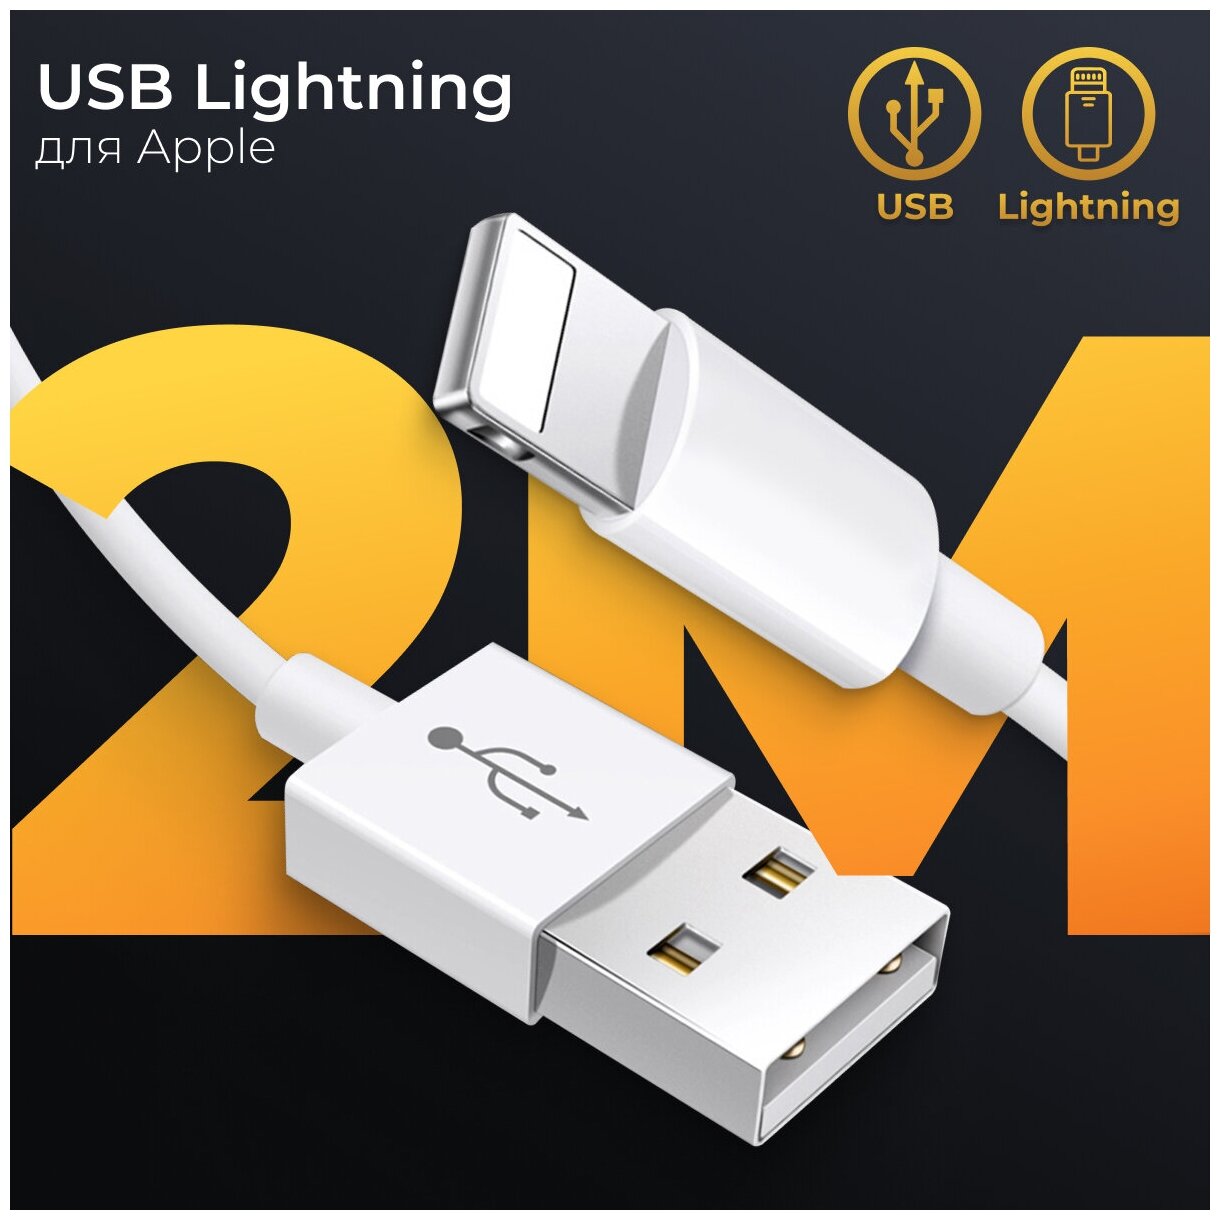 Зарядный кабель Lightning для Apple iPhone, iPad и AirPods / ЮСБ провод для Эпл Айфон/ USB провод лайтнинг для Айфон, 2 метра (Белый)